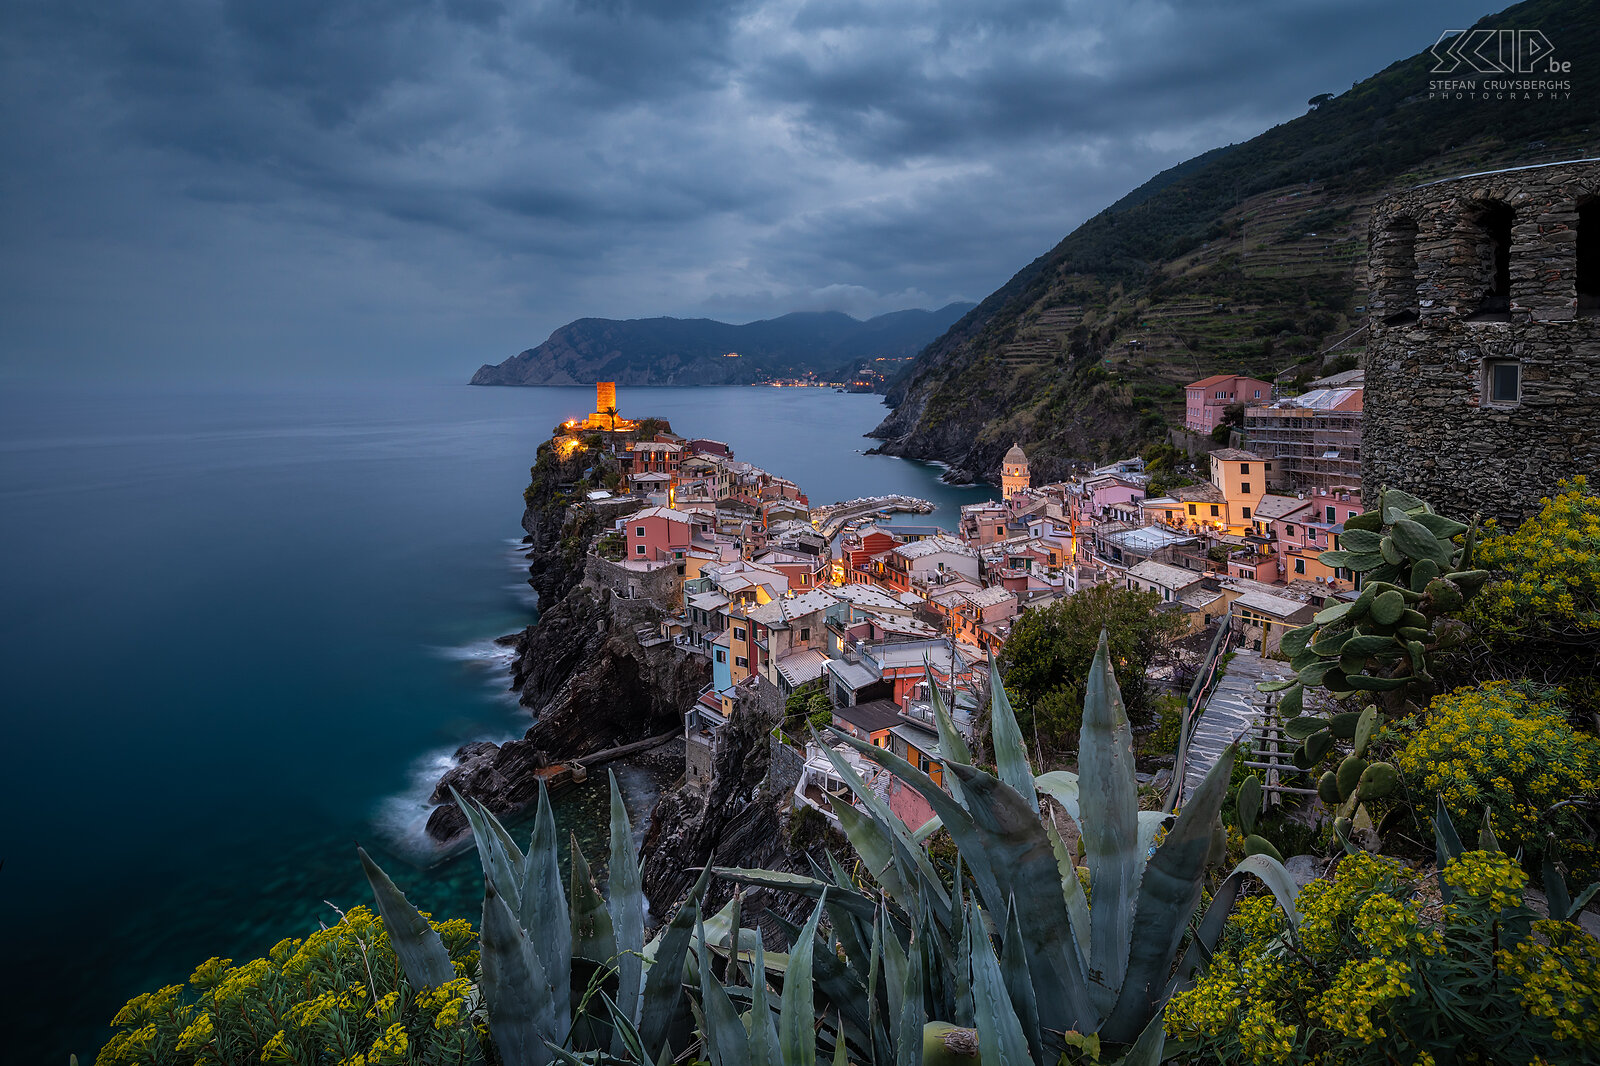 Vernazza - Blauwe uur Vernazza is een van de vijf dorpen van Cinque Terre. Het heeft prachtig gekleurde huizen en een bijzonder mooie haven en baai. Deze foto werd gemaakt vanop een bekende fotolocatie op een helling aan de zuidkant tijdens het blauwe uur op een bewolkte avond. Stefan Cruysberghs